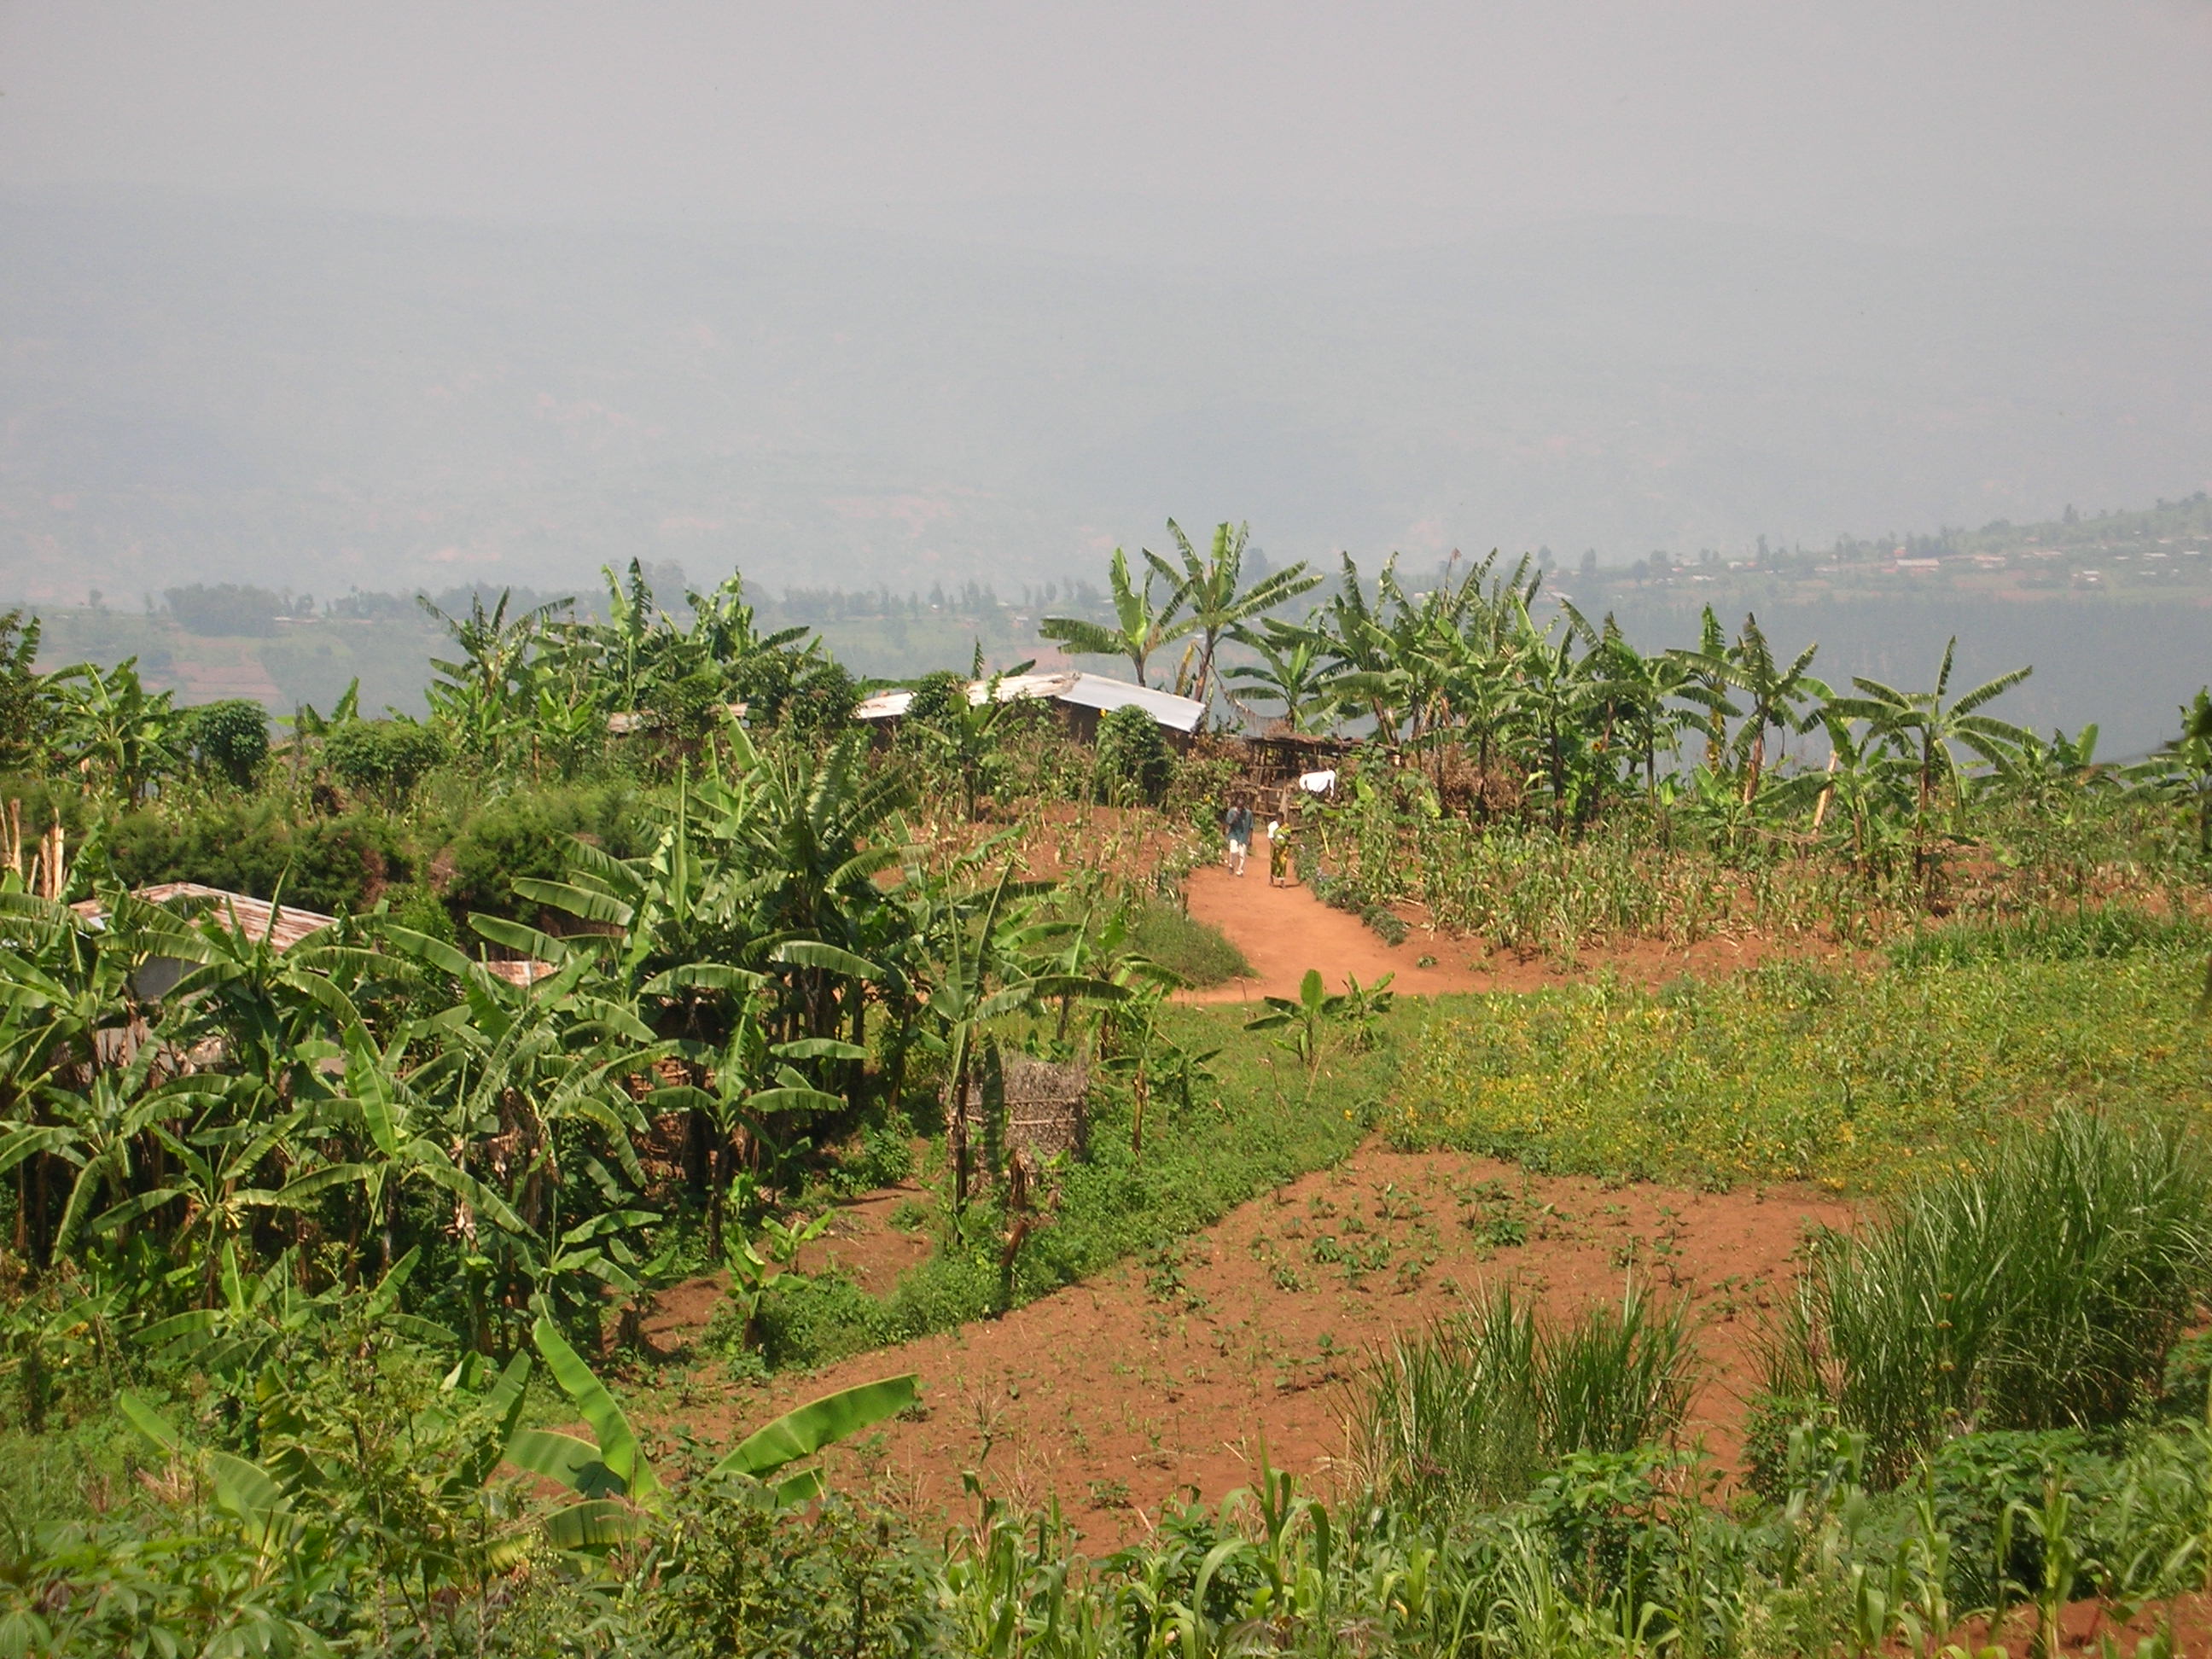 Country side in Rwanda